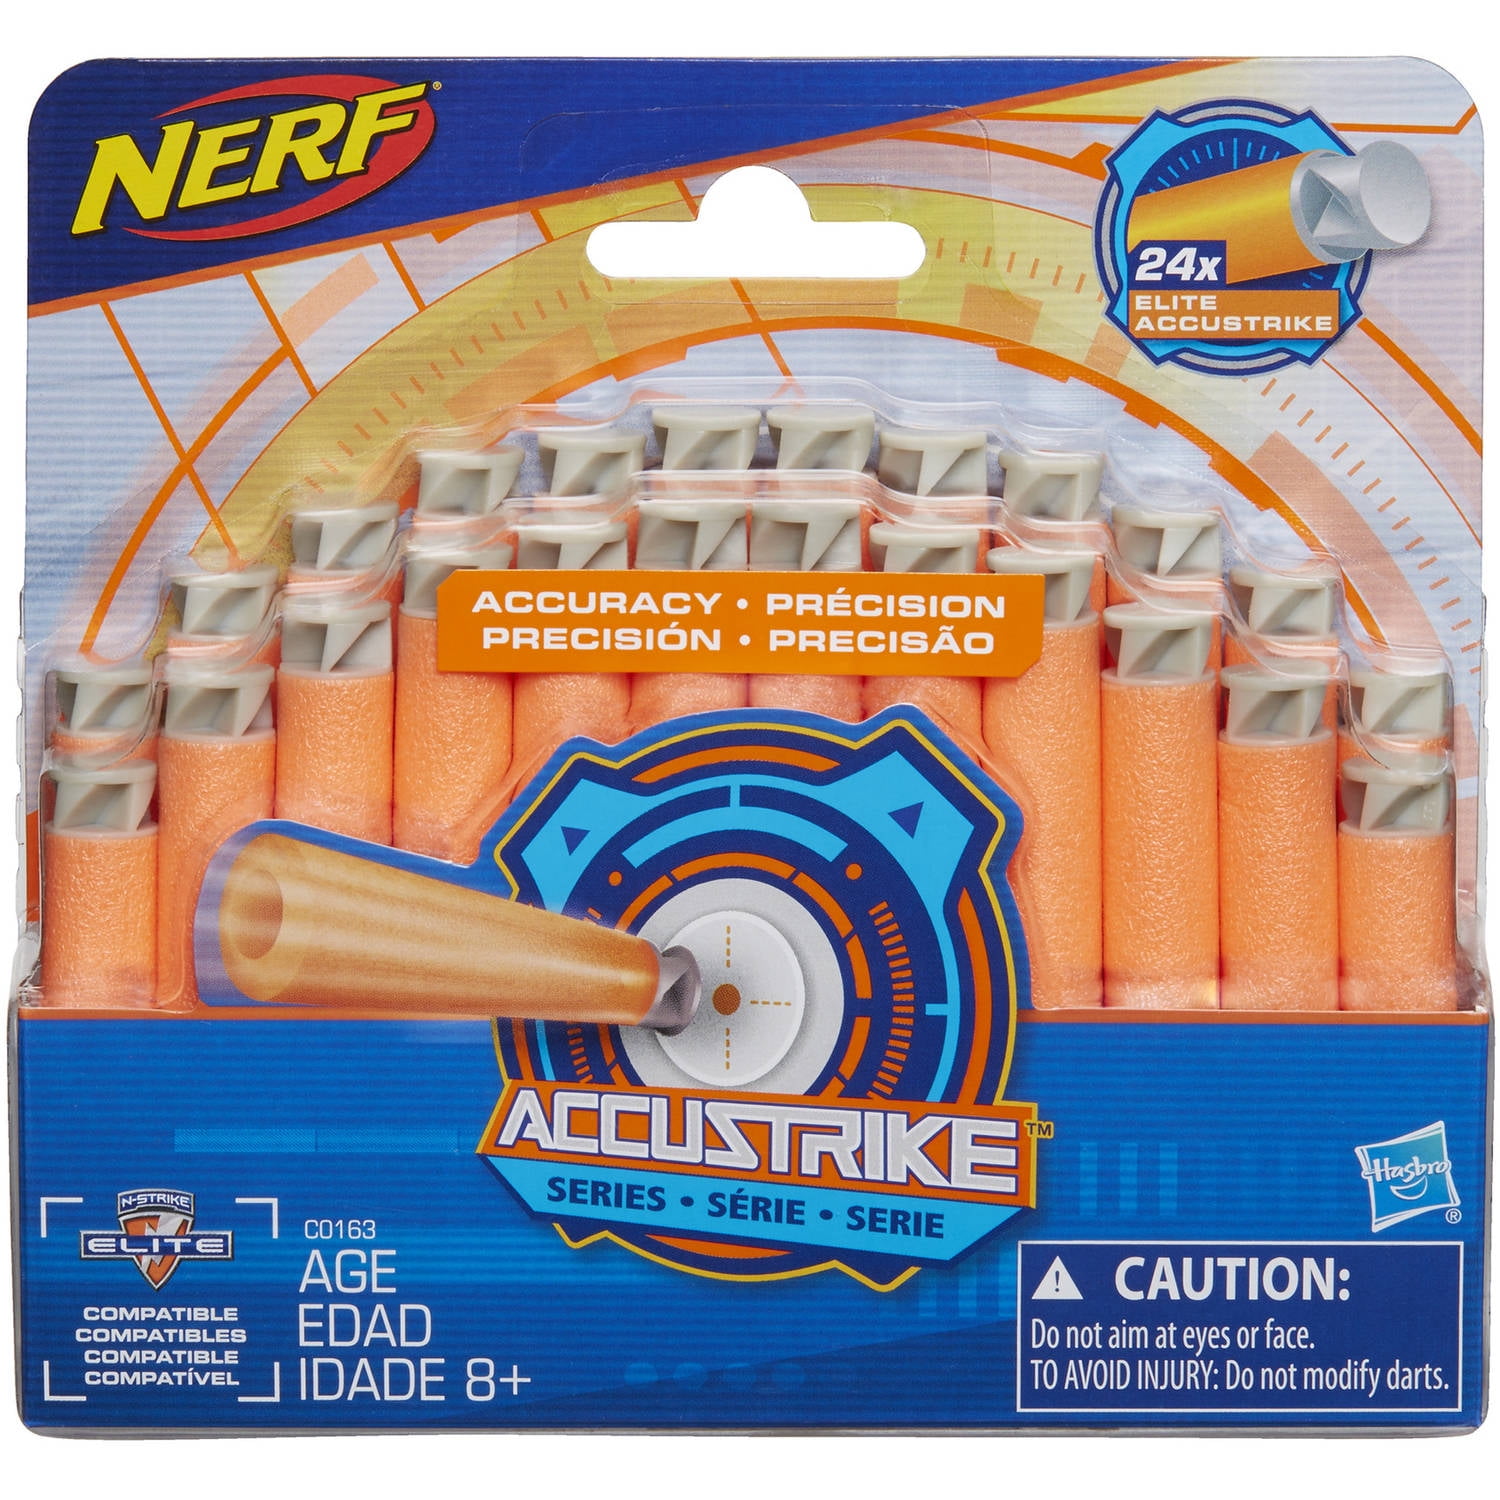 Nerf N-Strike Elite AccuStrike Series 24-Pack Refill Walmart.com